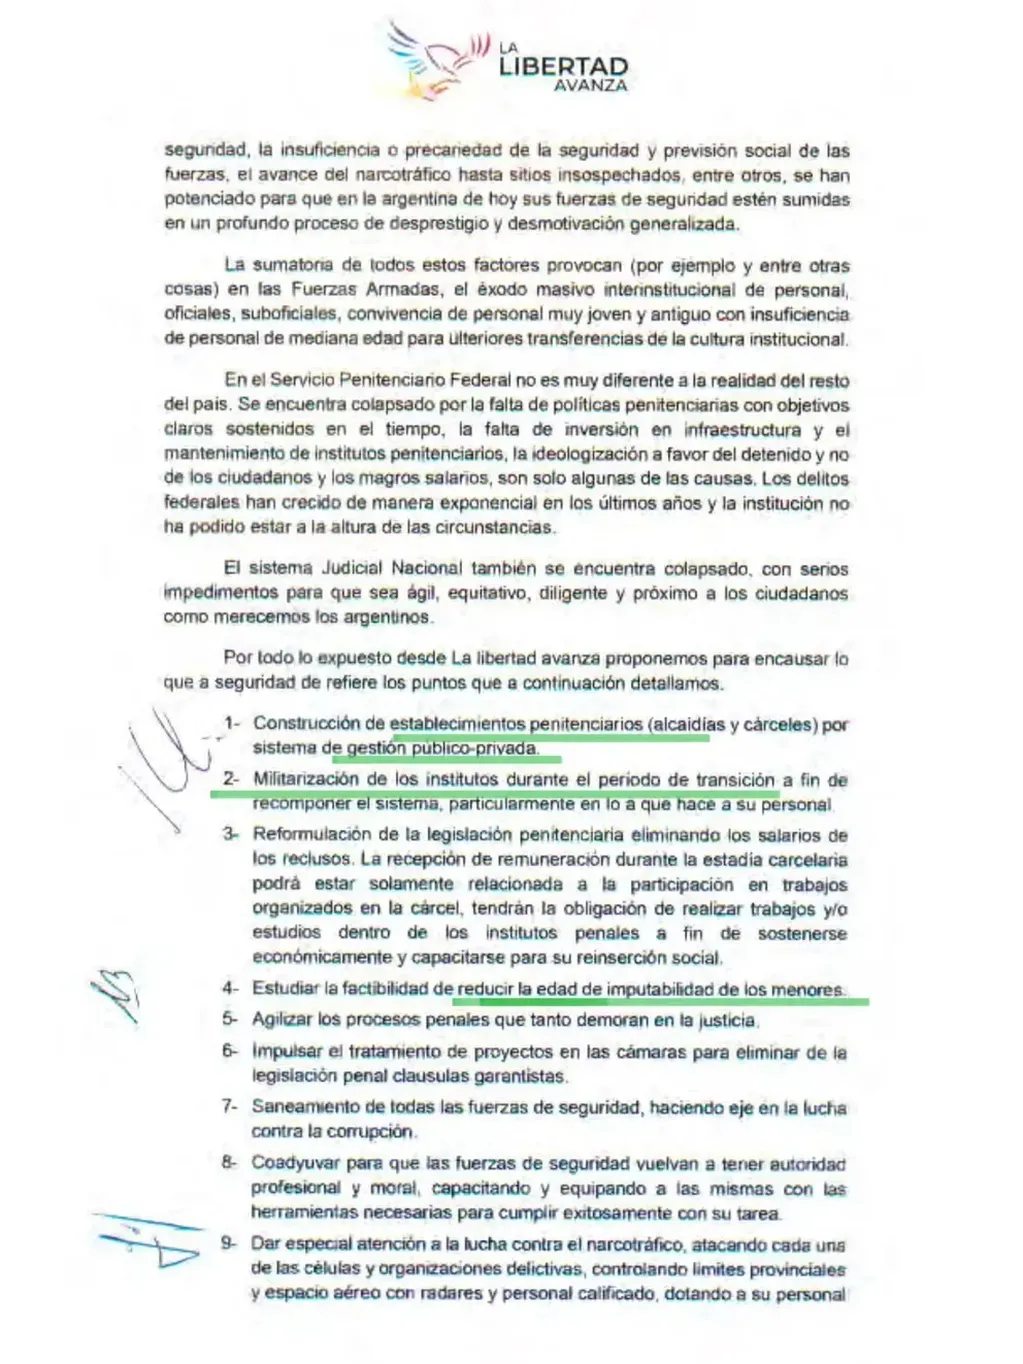 Las propuestas de Javier Milei como candidato de Libertad Avanza.